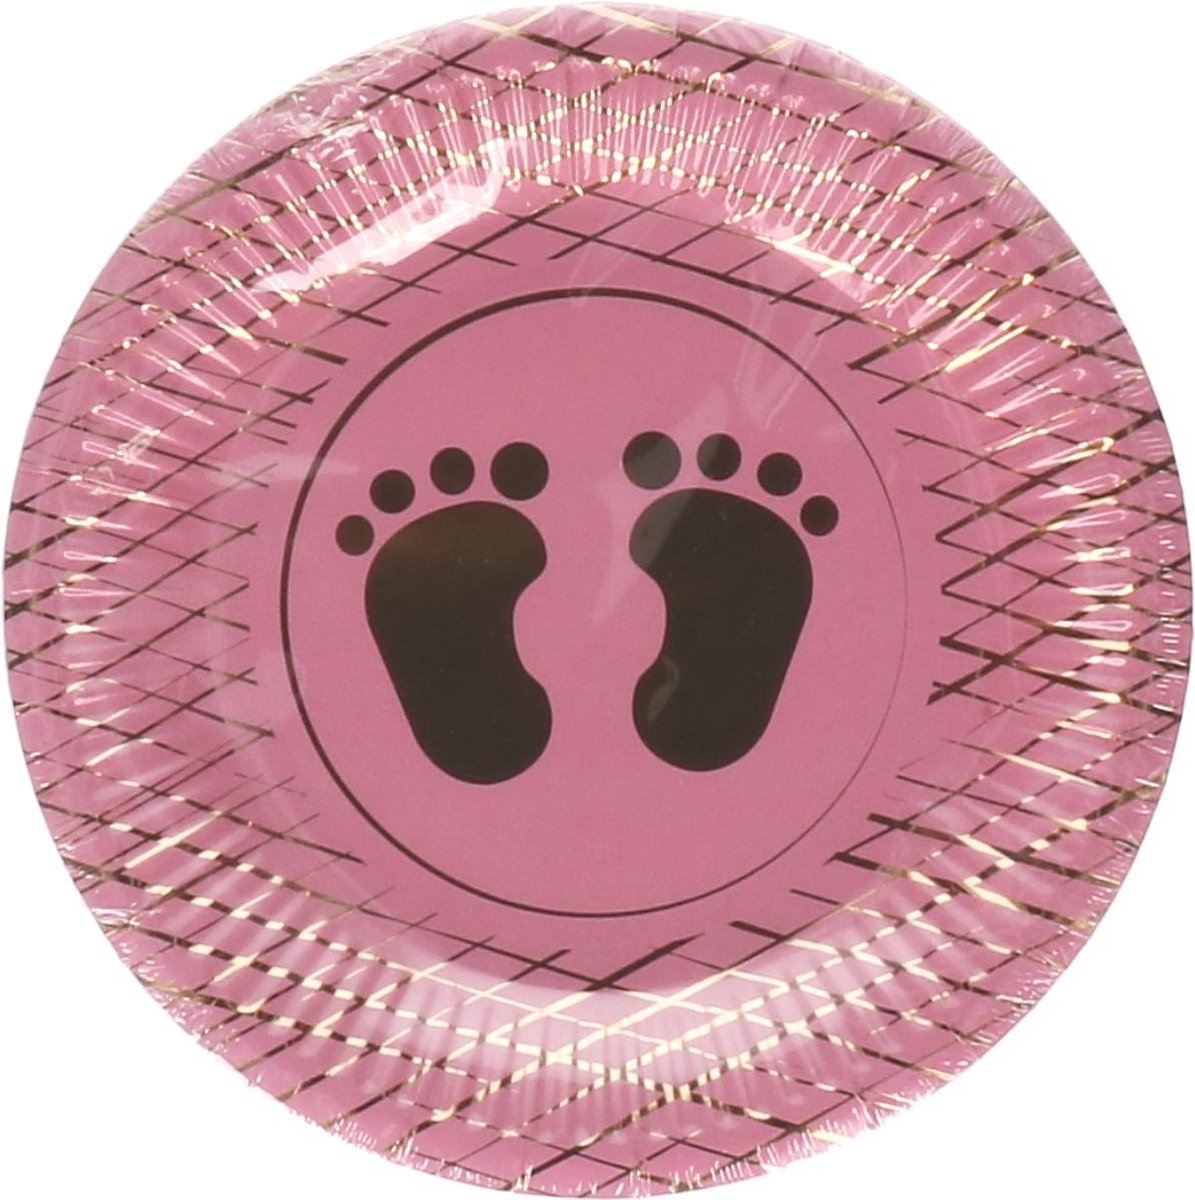 Kartonnen Bordjes roze met gouden voetjes klein geboorte meisje 23 cm 8 st - Wegwerp borden - Feest/verjaardag/BBQ borden -baby shower